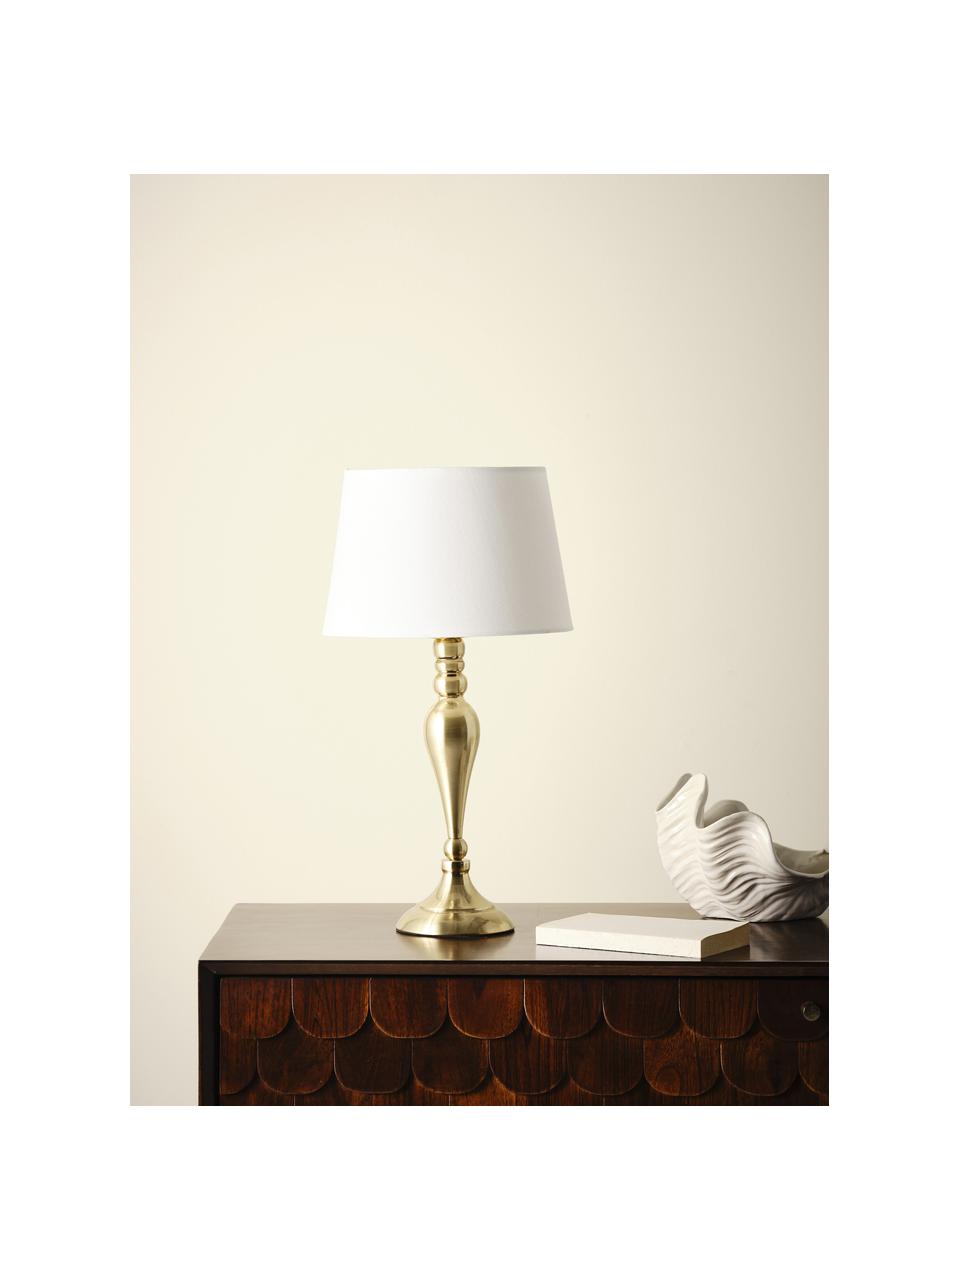 Große Tischlampe Brighton in Messing, Lampenschirm: Baumwolle, Lampenfuß: Metall, lackiert, Weiß, Messingfarben, Ø 25 x H 52 cm